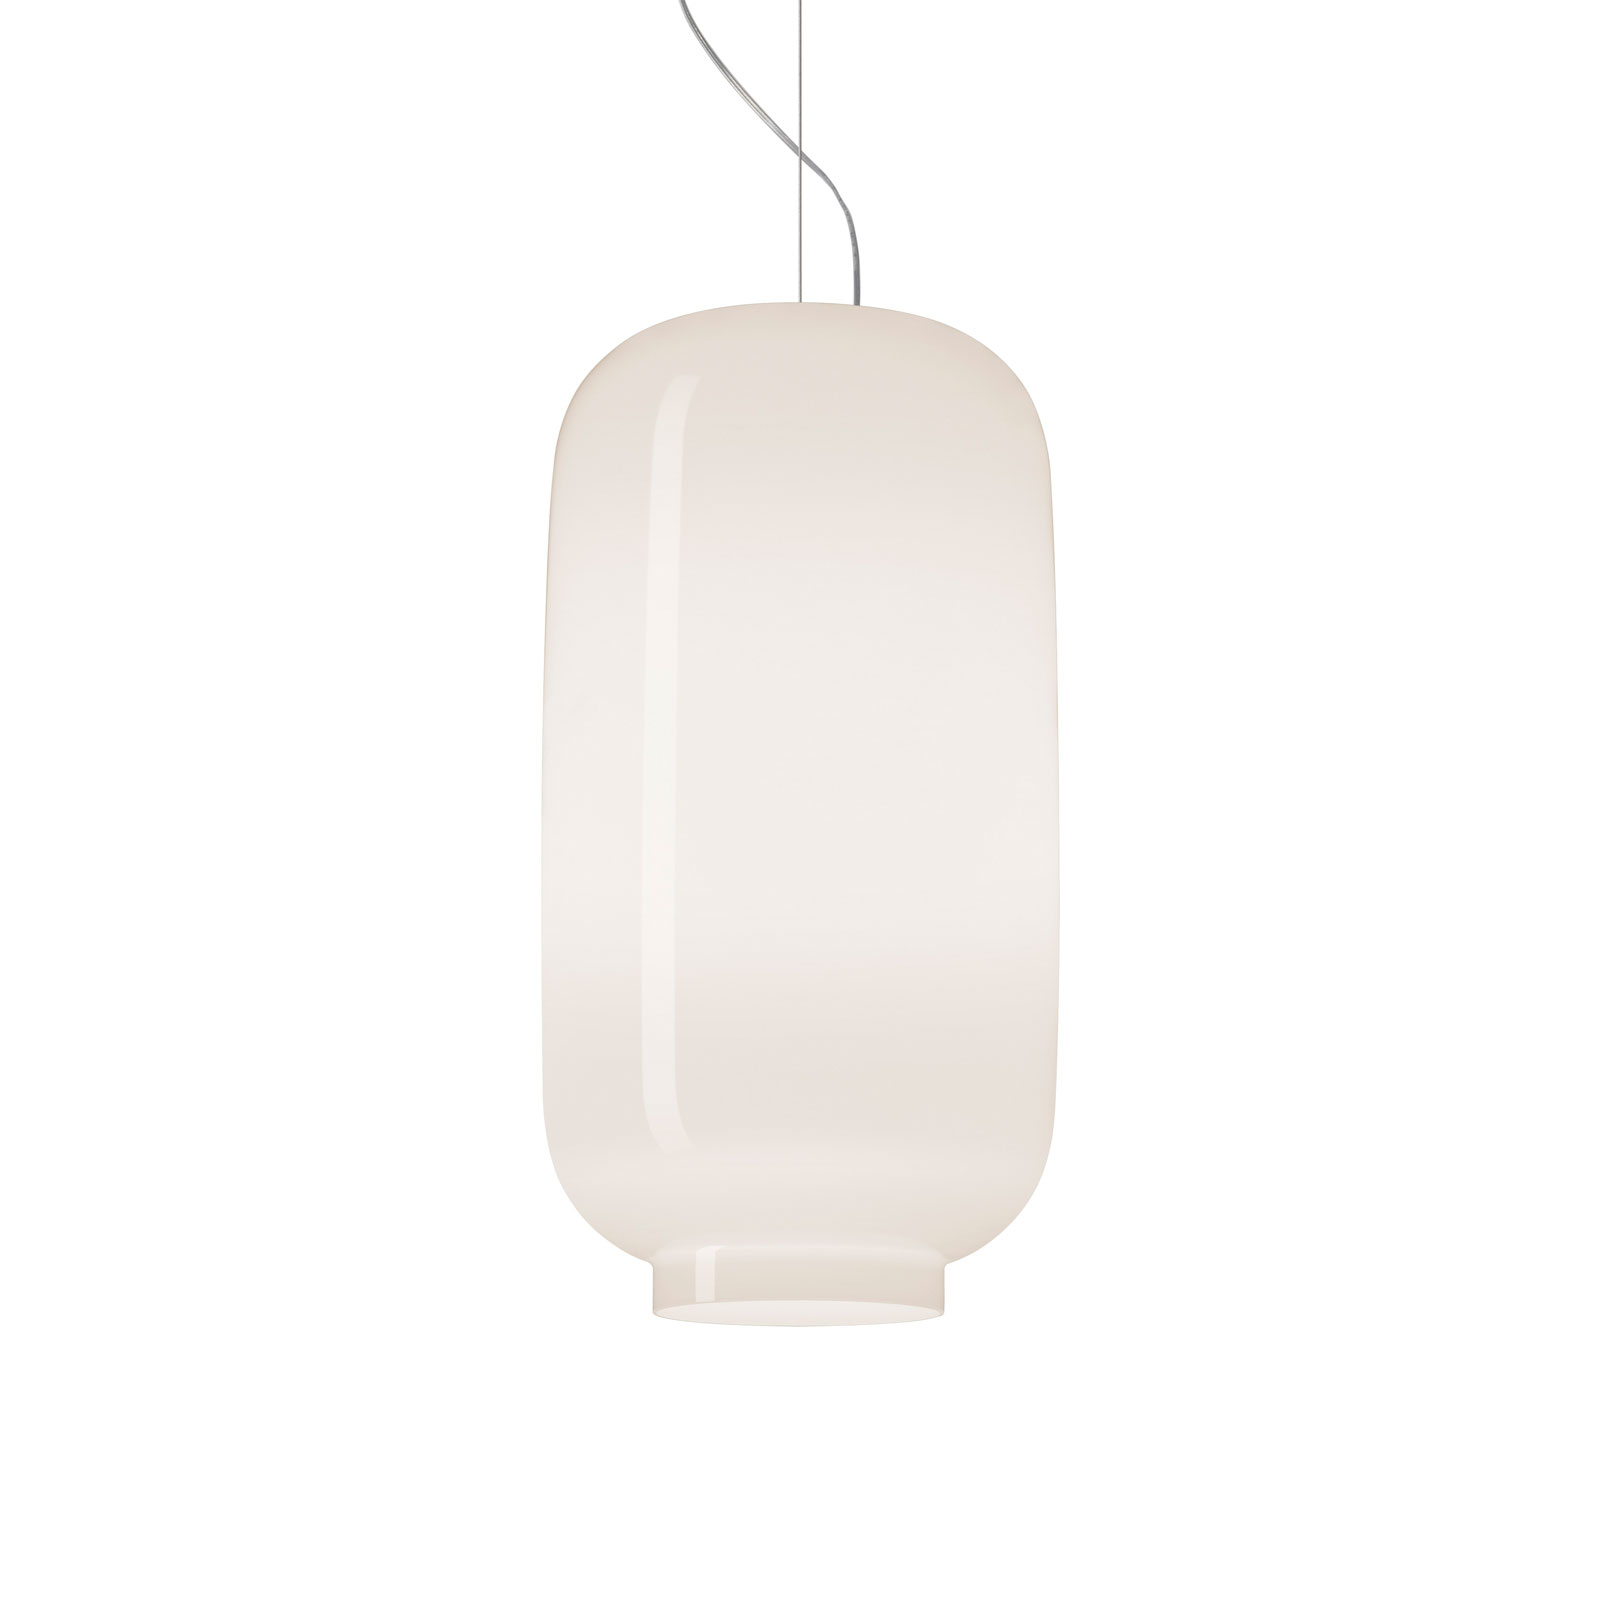 Foscarini Chouchin Bianco 2 a sospensione E27 LED